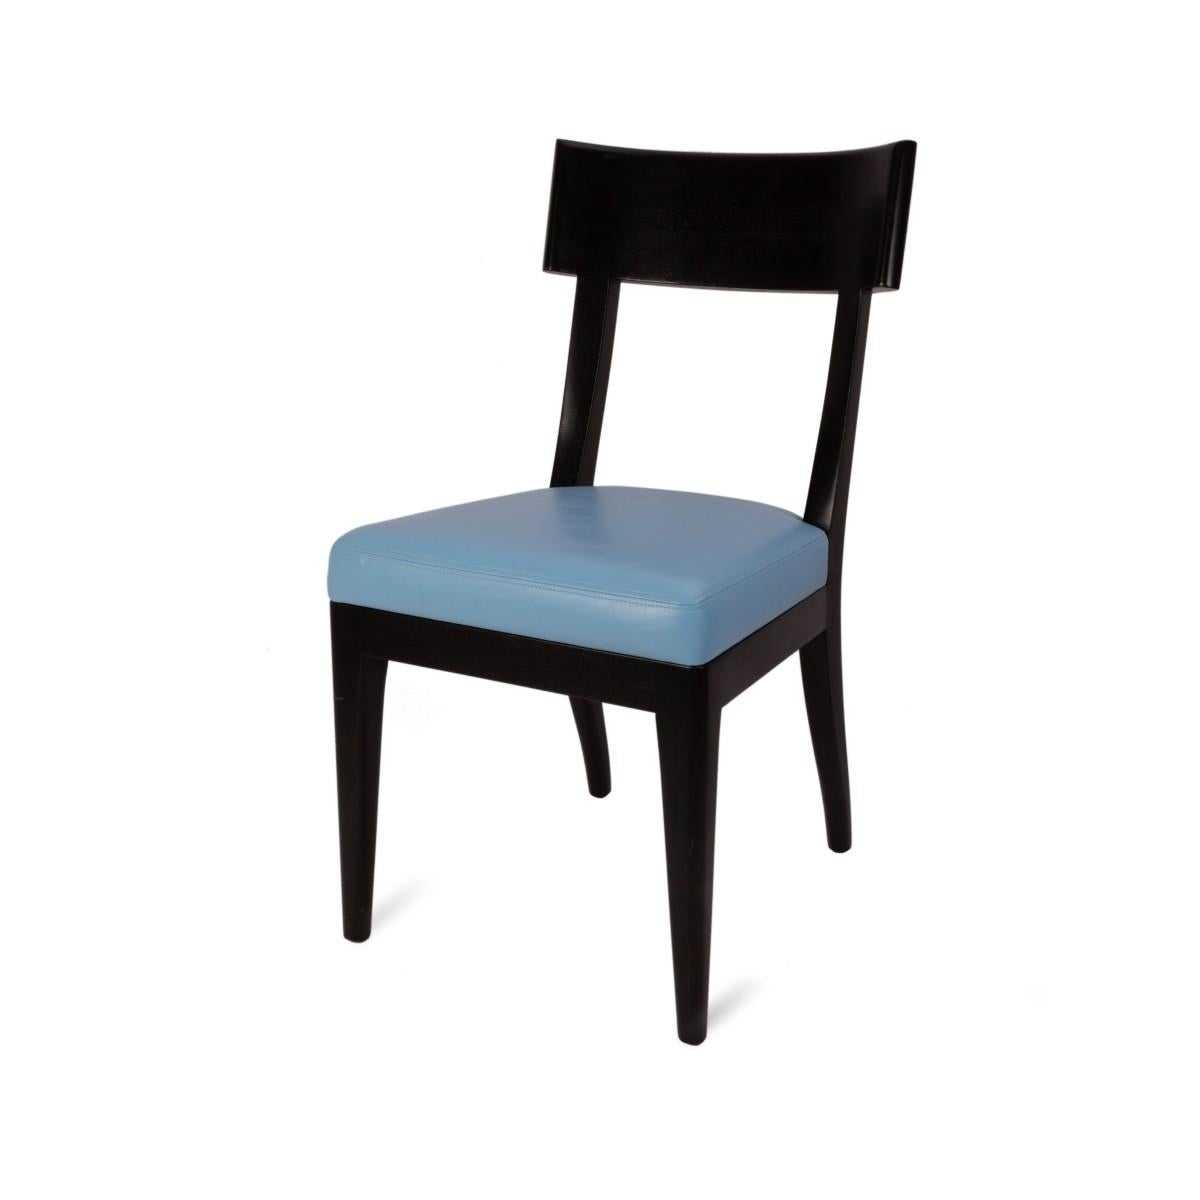 Ensemble de cinq (5) chaises de salle à manger Terra de Christian Liaigre pour Holly Hunt en cuir bleu pâle et finition marron foncé. 

Une certaine usure des cadres et de la tapisserie::

Mesure : Hauteur du siège : 18 pouces.